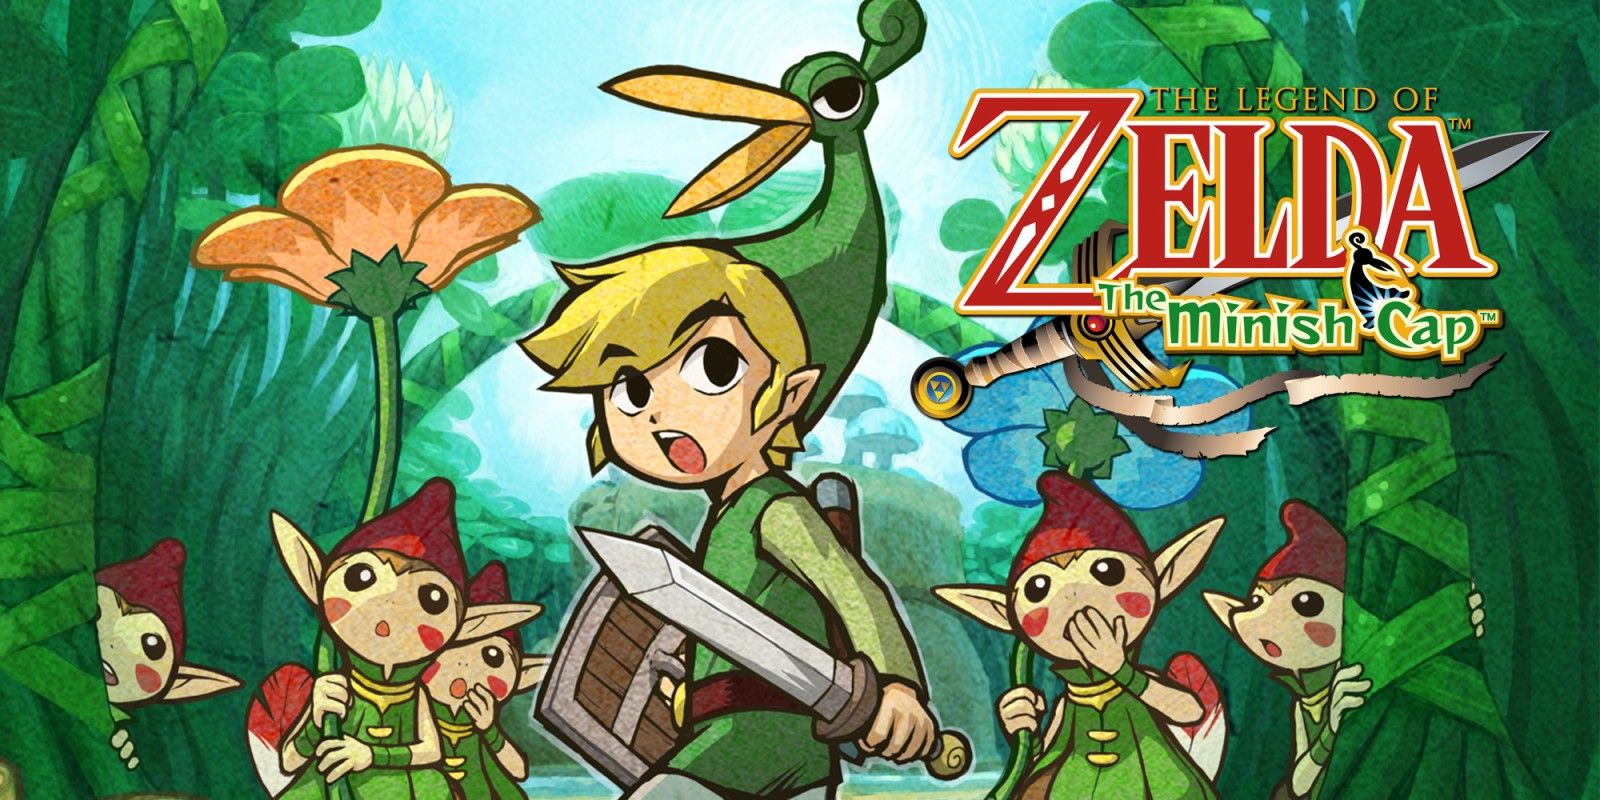 Arte da caixa de The Legend of Zelda: The Minish Cap, mostrando Link usando o boné de mesmo nome cercado por personagens Minish.